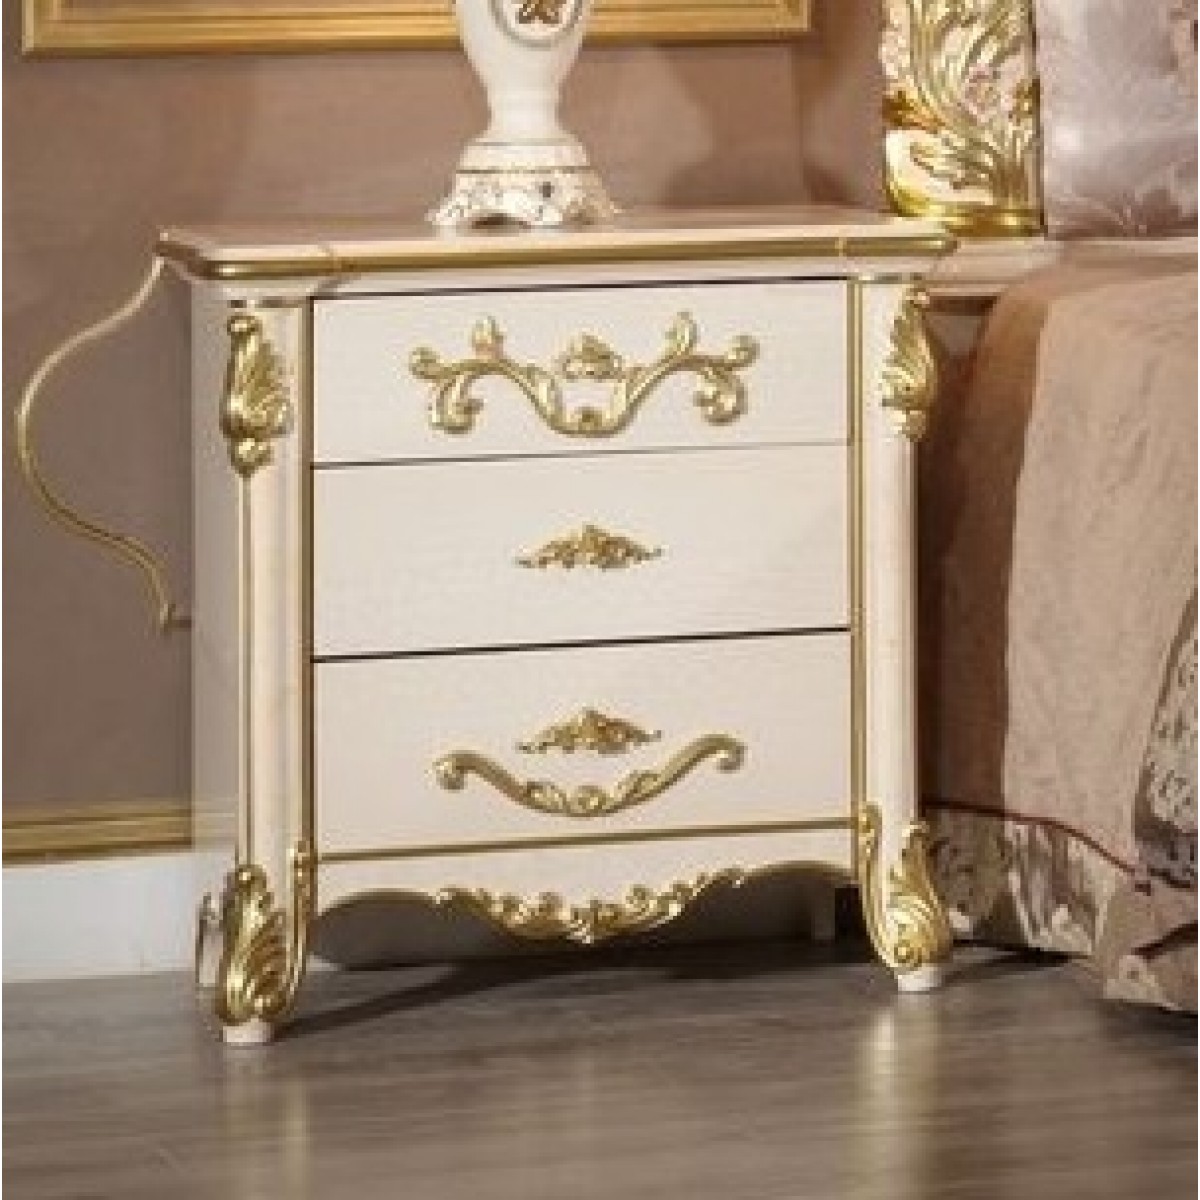 мебель белая спальня с золотом